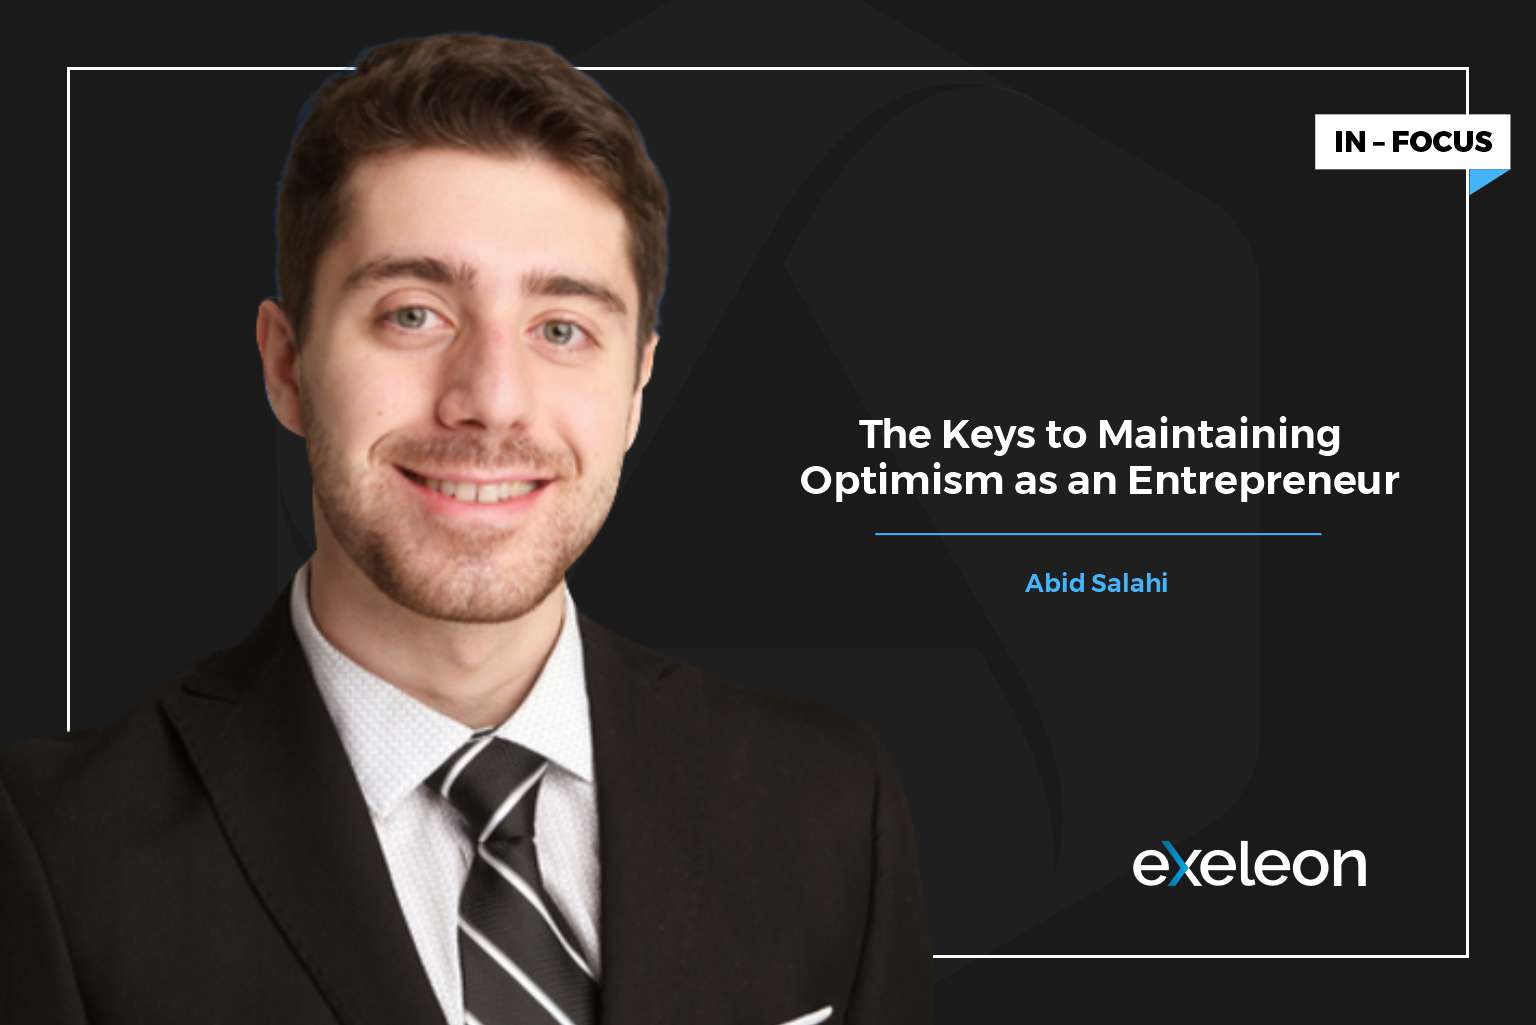 Abid Salahi on Maintaining Optimism as an Entrepreneur